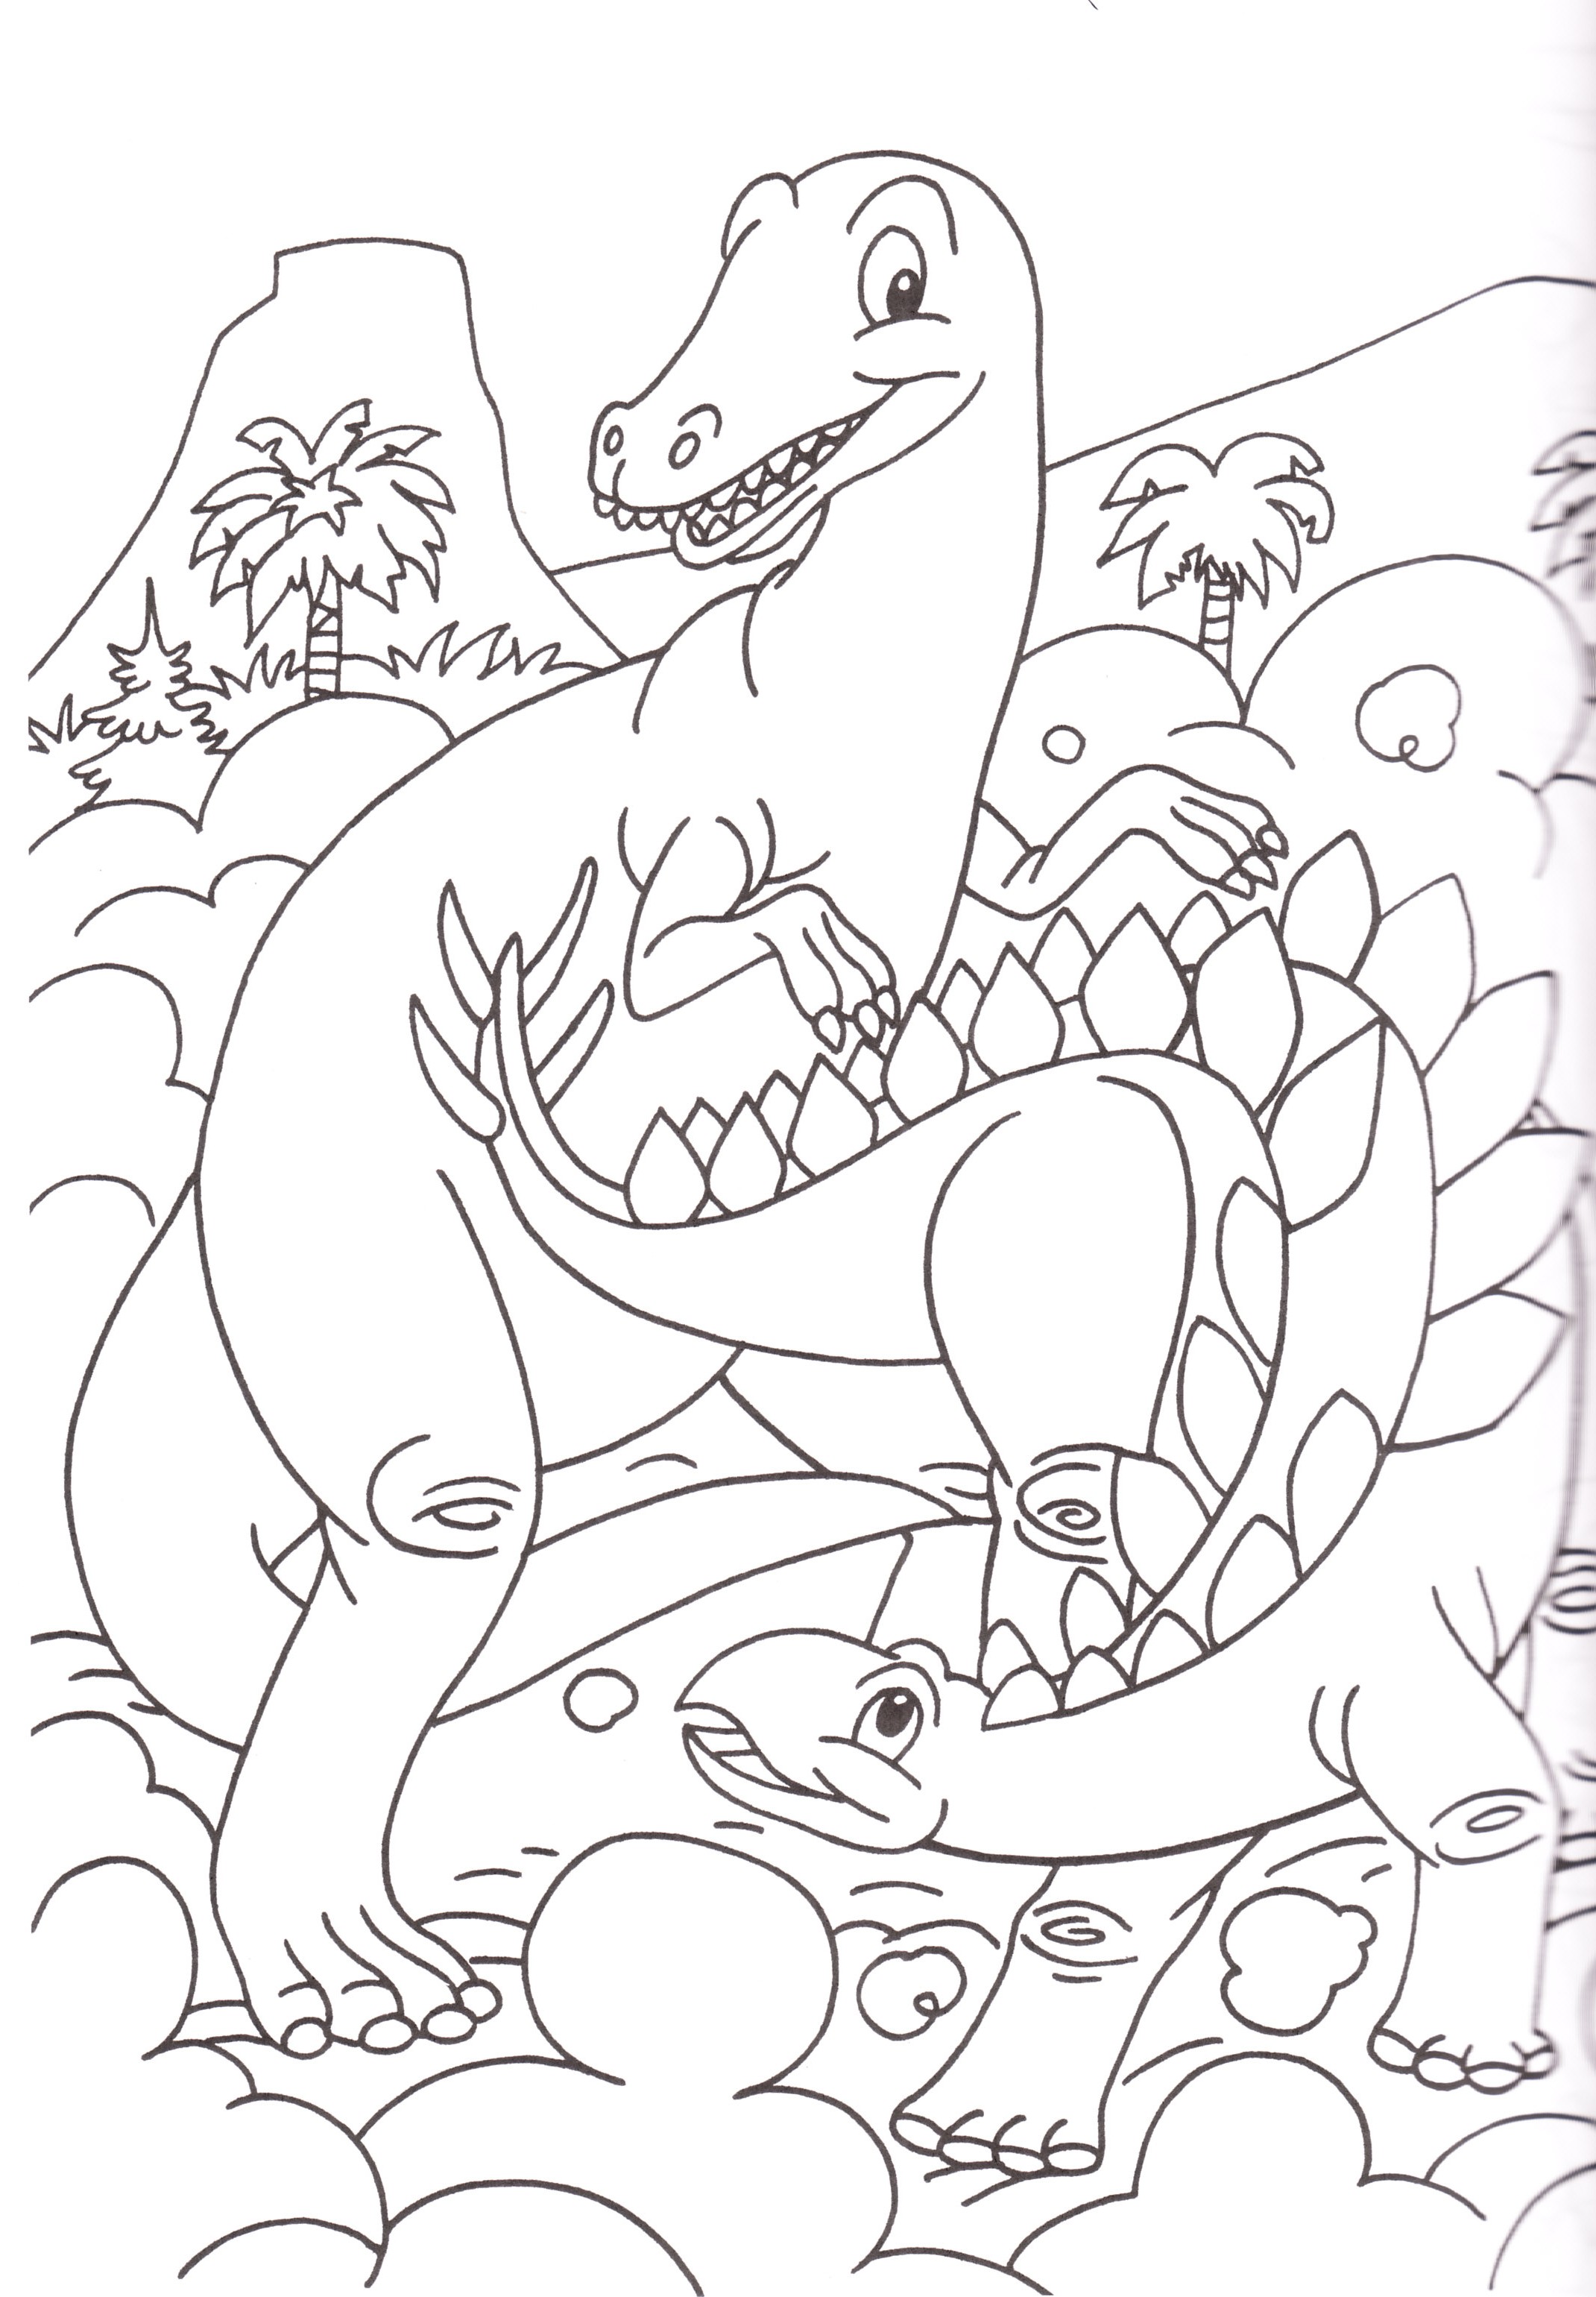 disegni-bambini-colorare-stampare-dinosauri - Blogmamma.it